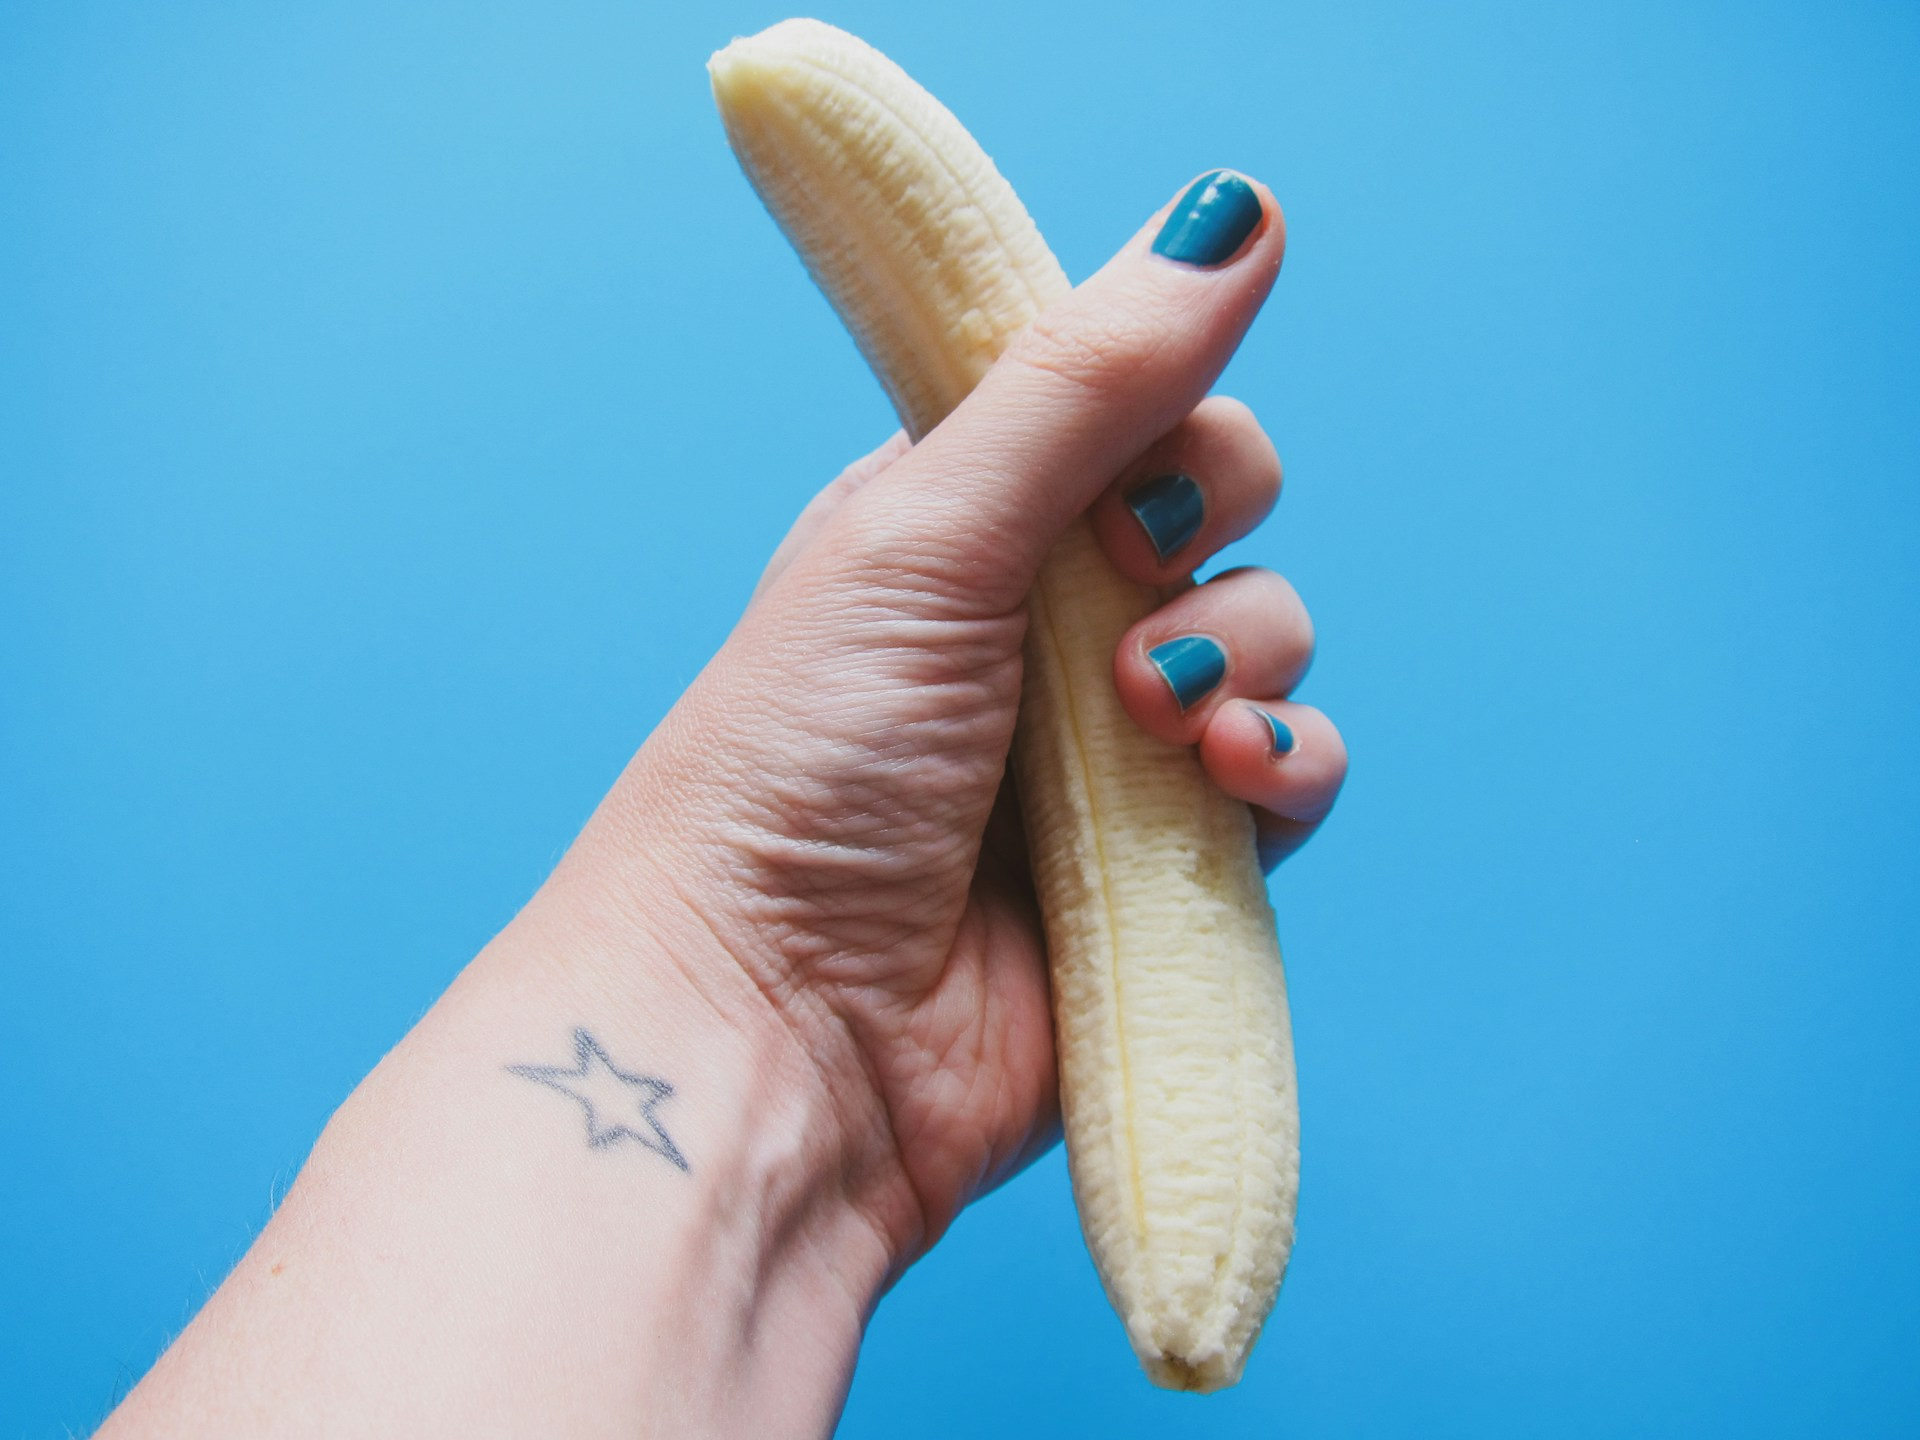 https://unsplash.com/photos/person-holding-peeled-banana-fruit-WlB1xhXAYOc